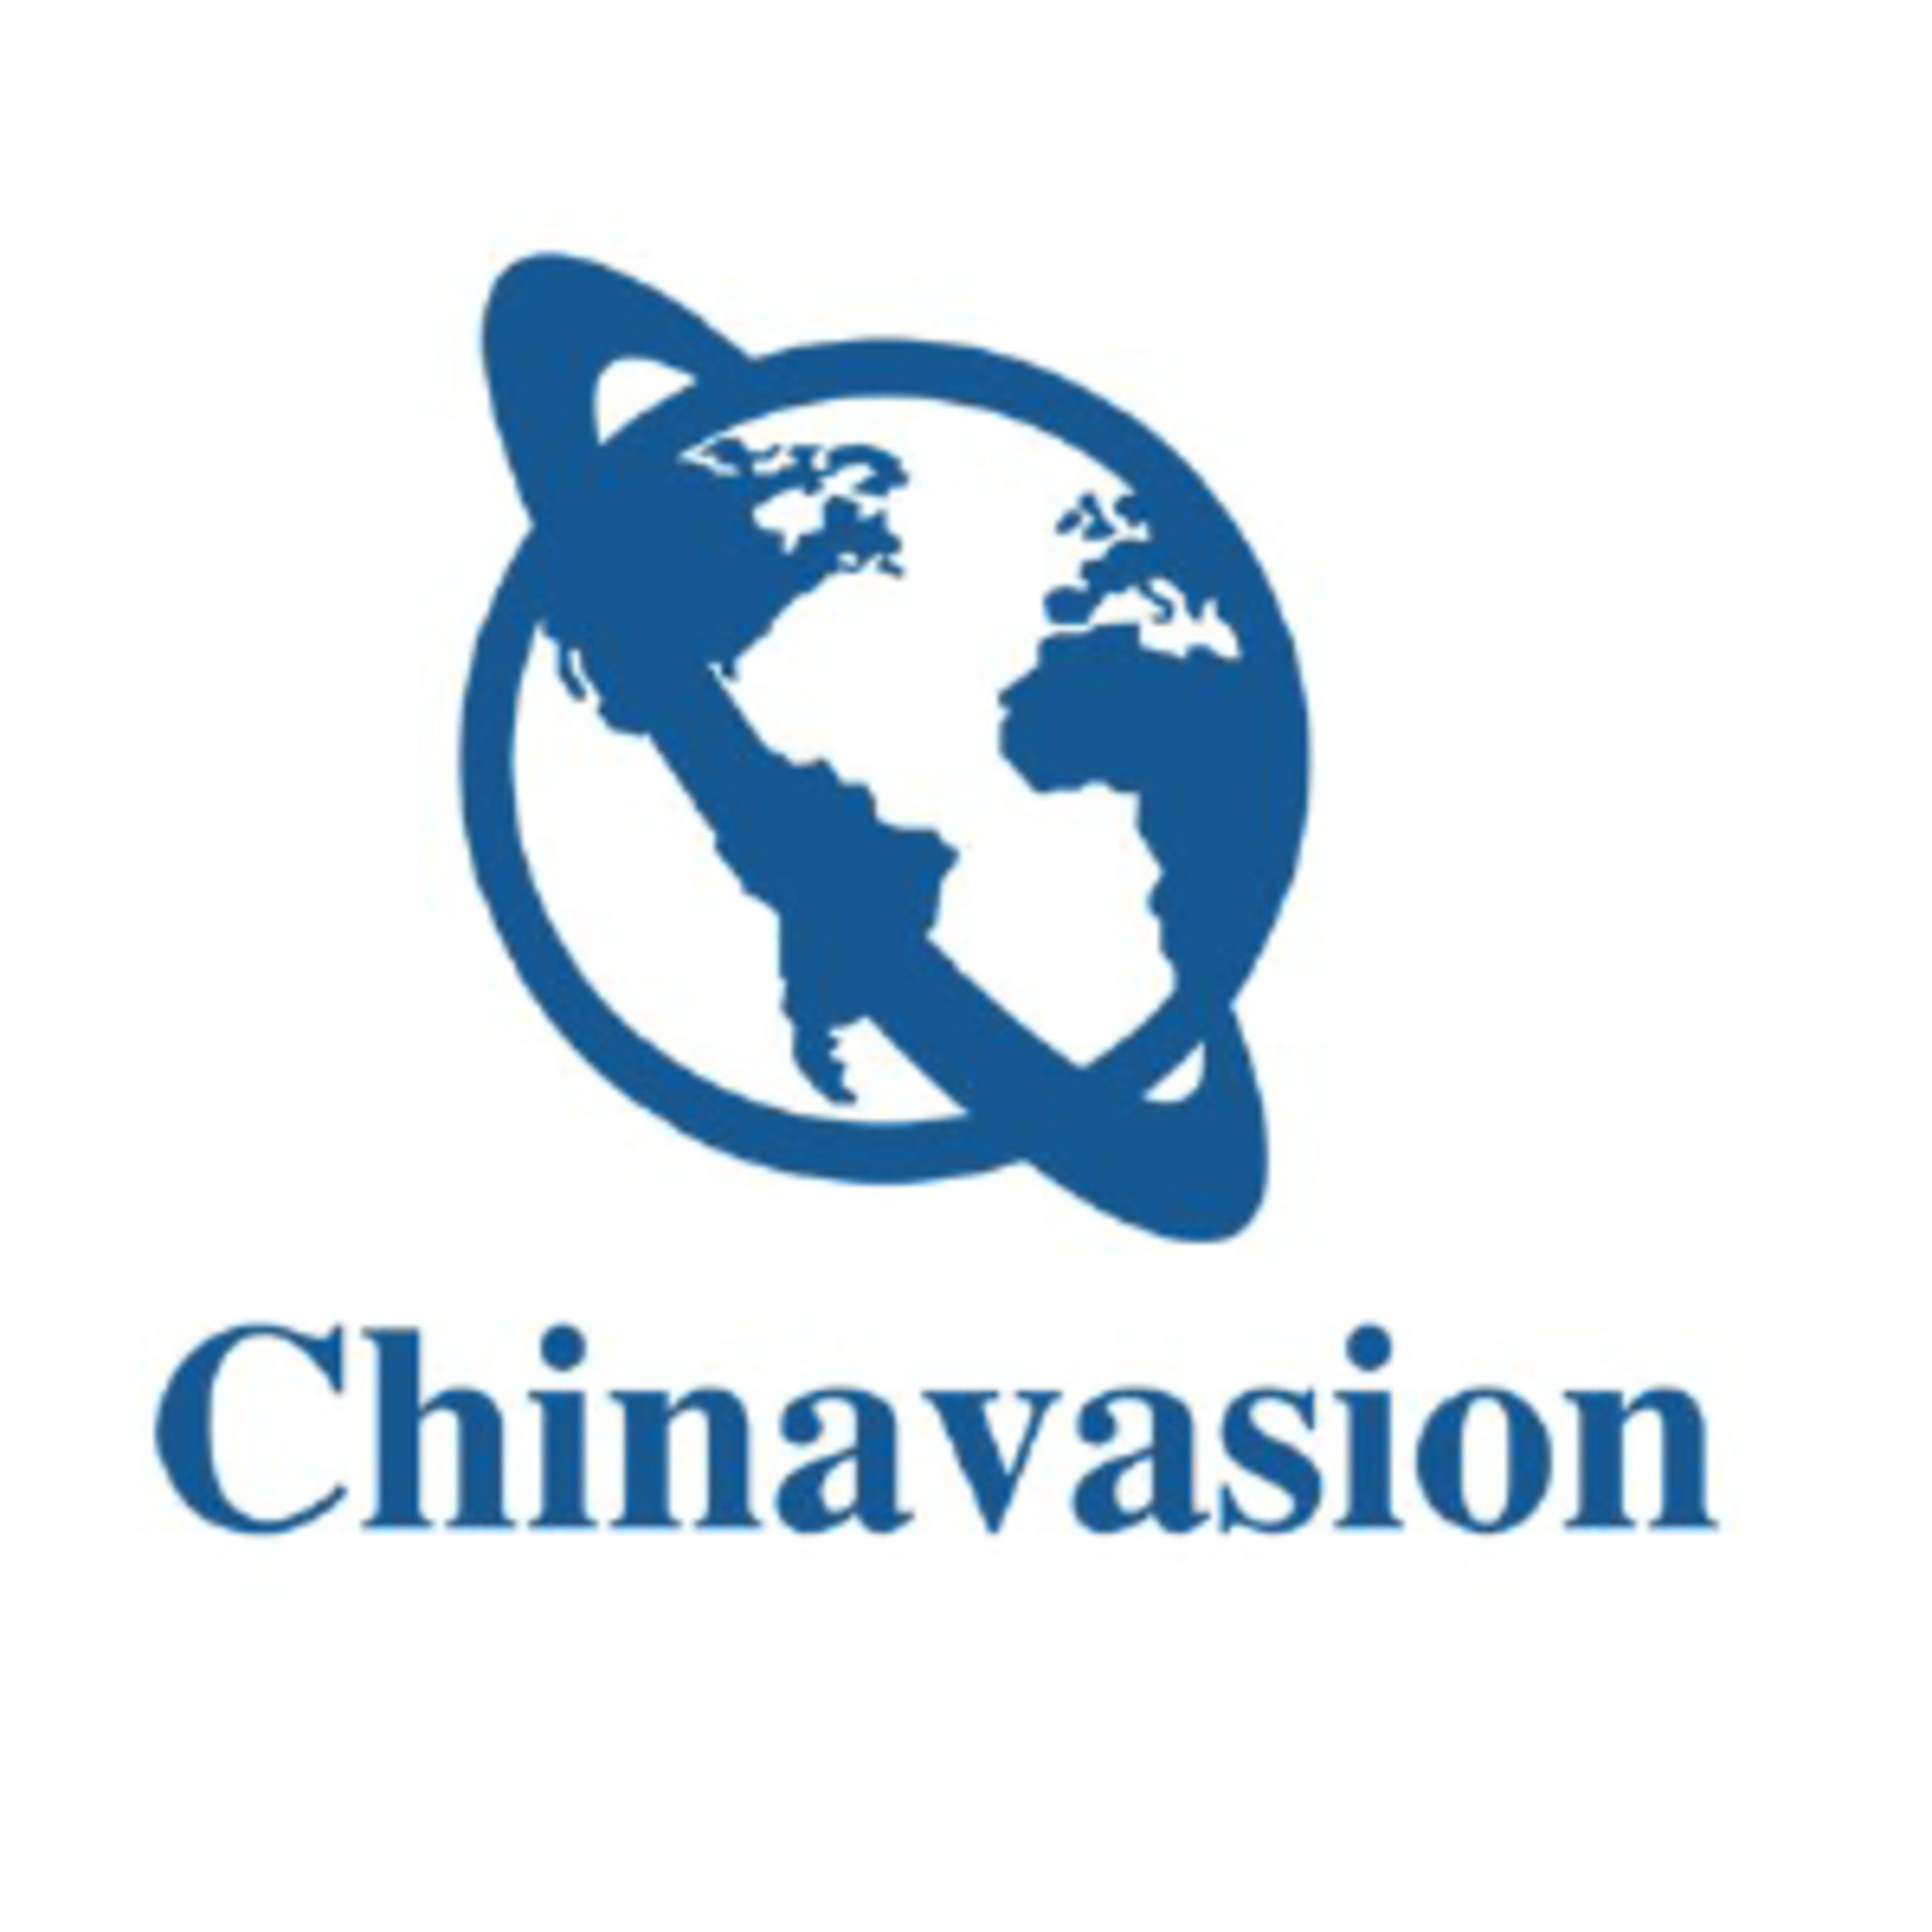 ChinavasionCode